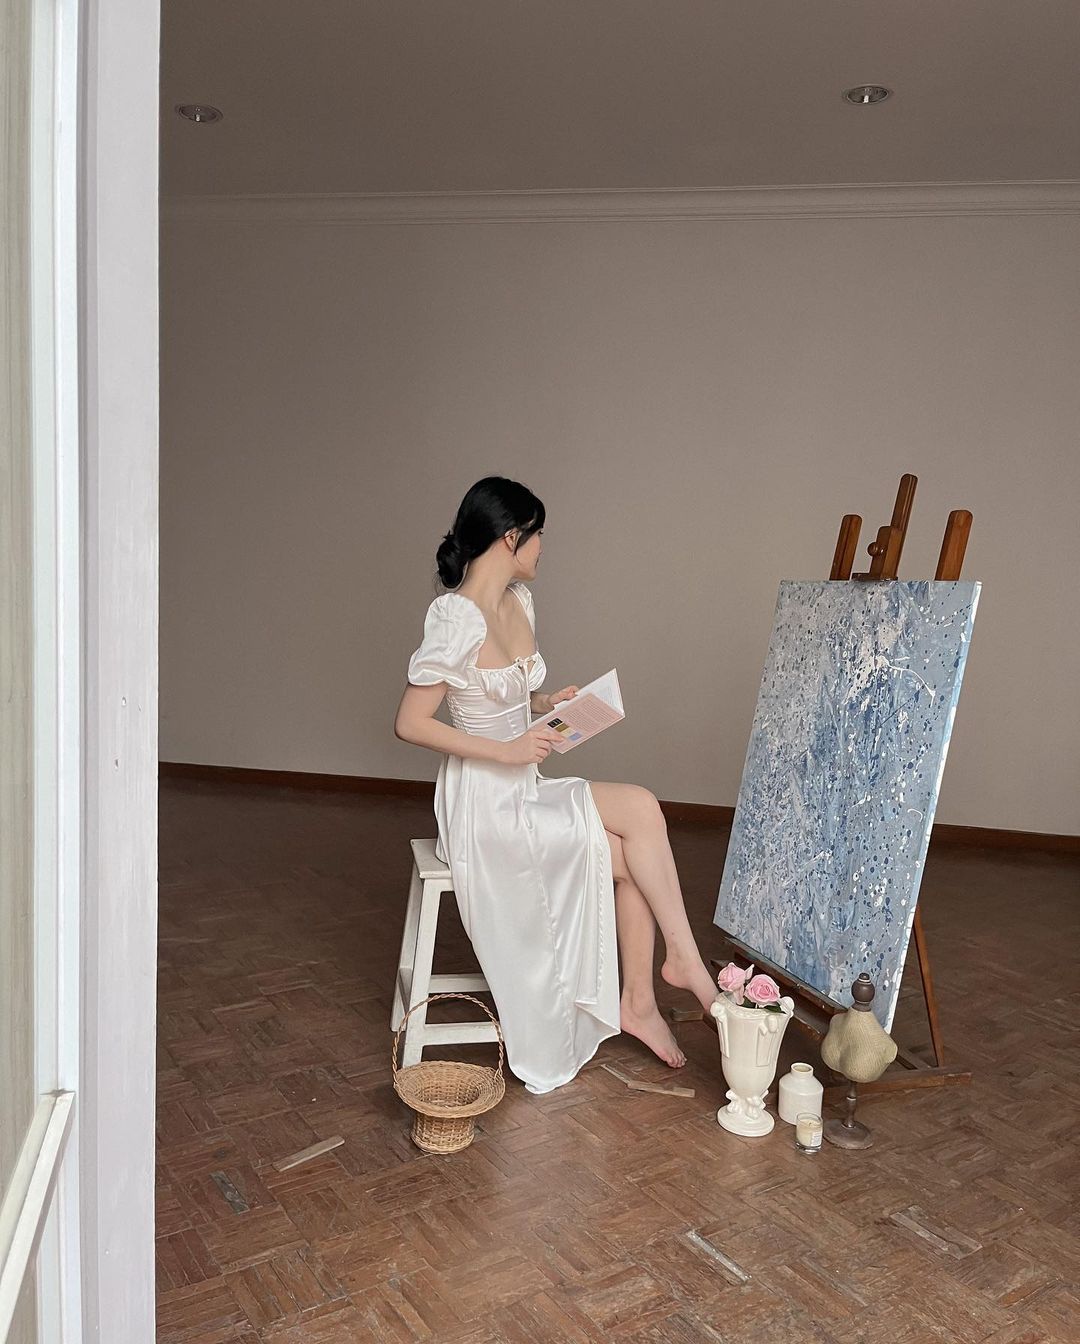 穿著 the.lookbook.select 設計的 Adella 復古連身裙的女人坐在凳子上，在一間空蕩蕩的房間裡，在畫架旁看書，畫架上畫著一幅有紋理的畫作。